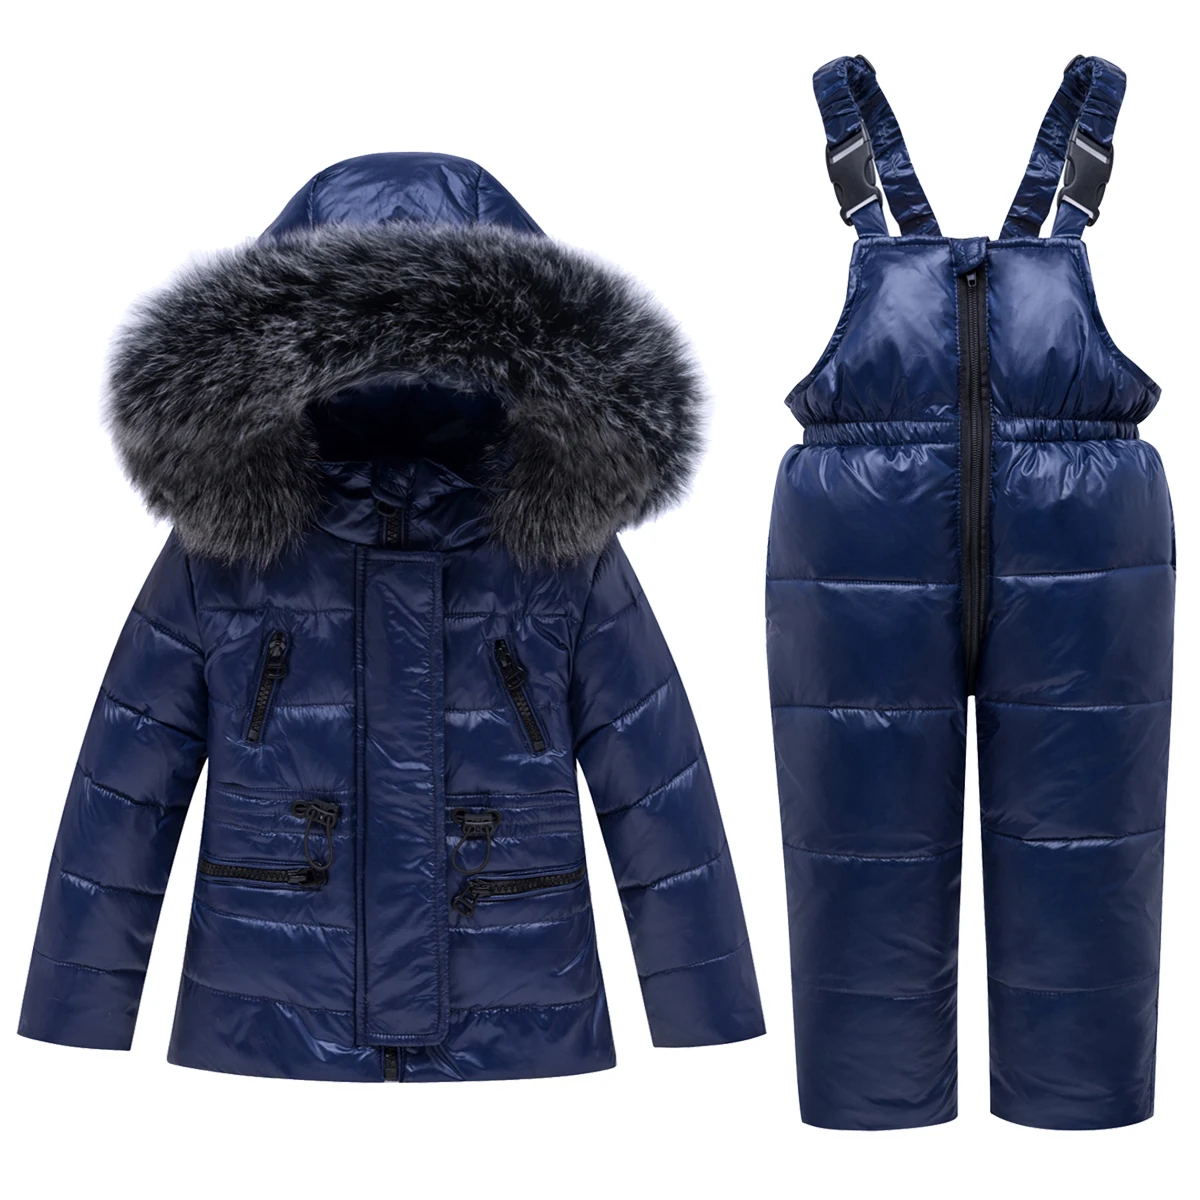 Для маленьких девочек зимняя одежда для мальчика, комплект-30 градусов пуховая куртка с капюшоном для детей, детские комбинезоны, одежда для снежной погоды Одежда для малышей, на возраст от 2 до 5 лет